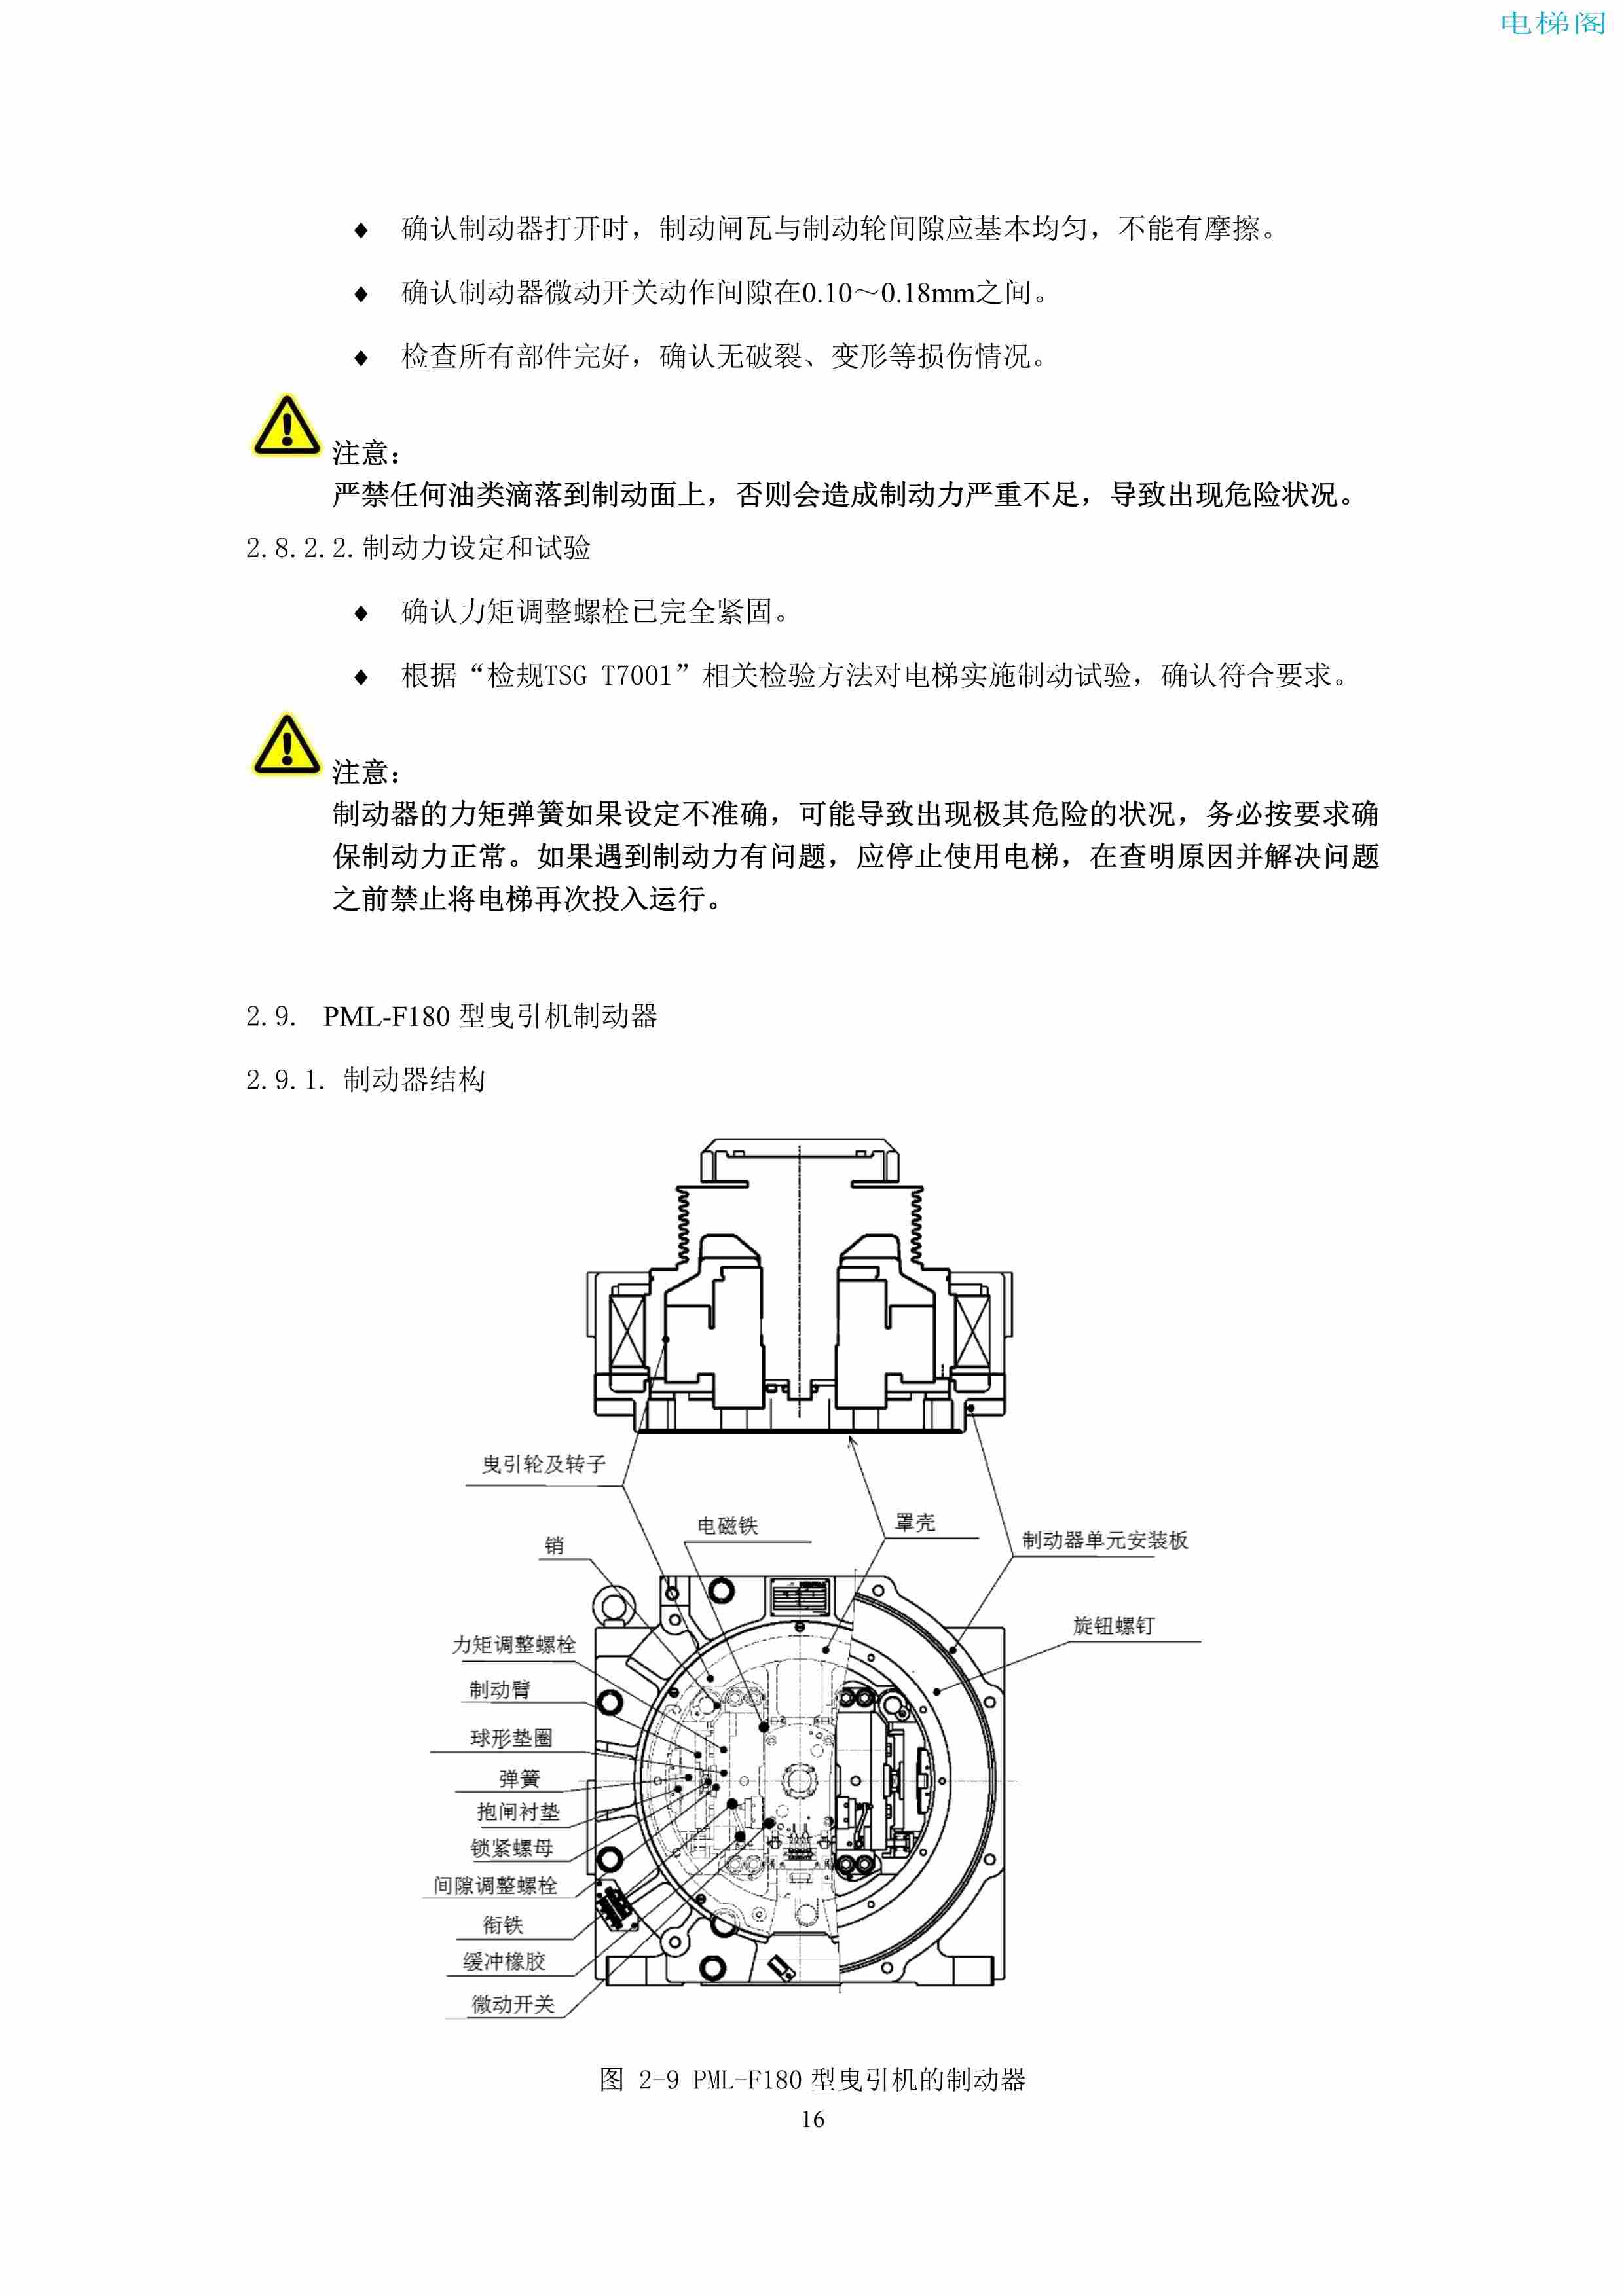 上海三菱电梯有限公司电梯制动器维护作业要领汇编_18.jpg